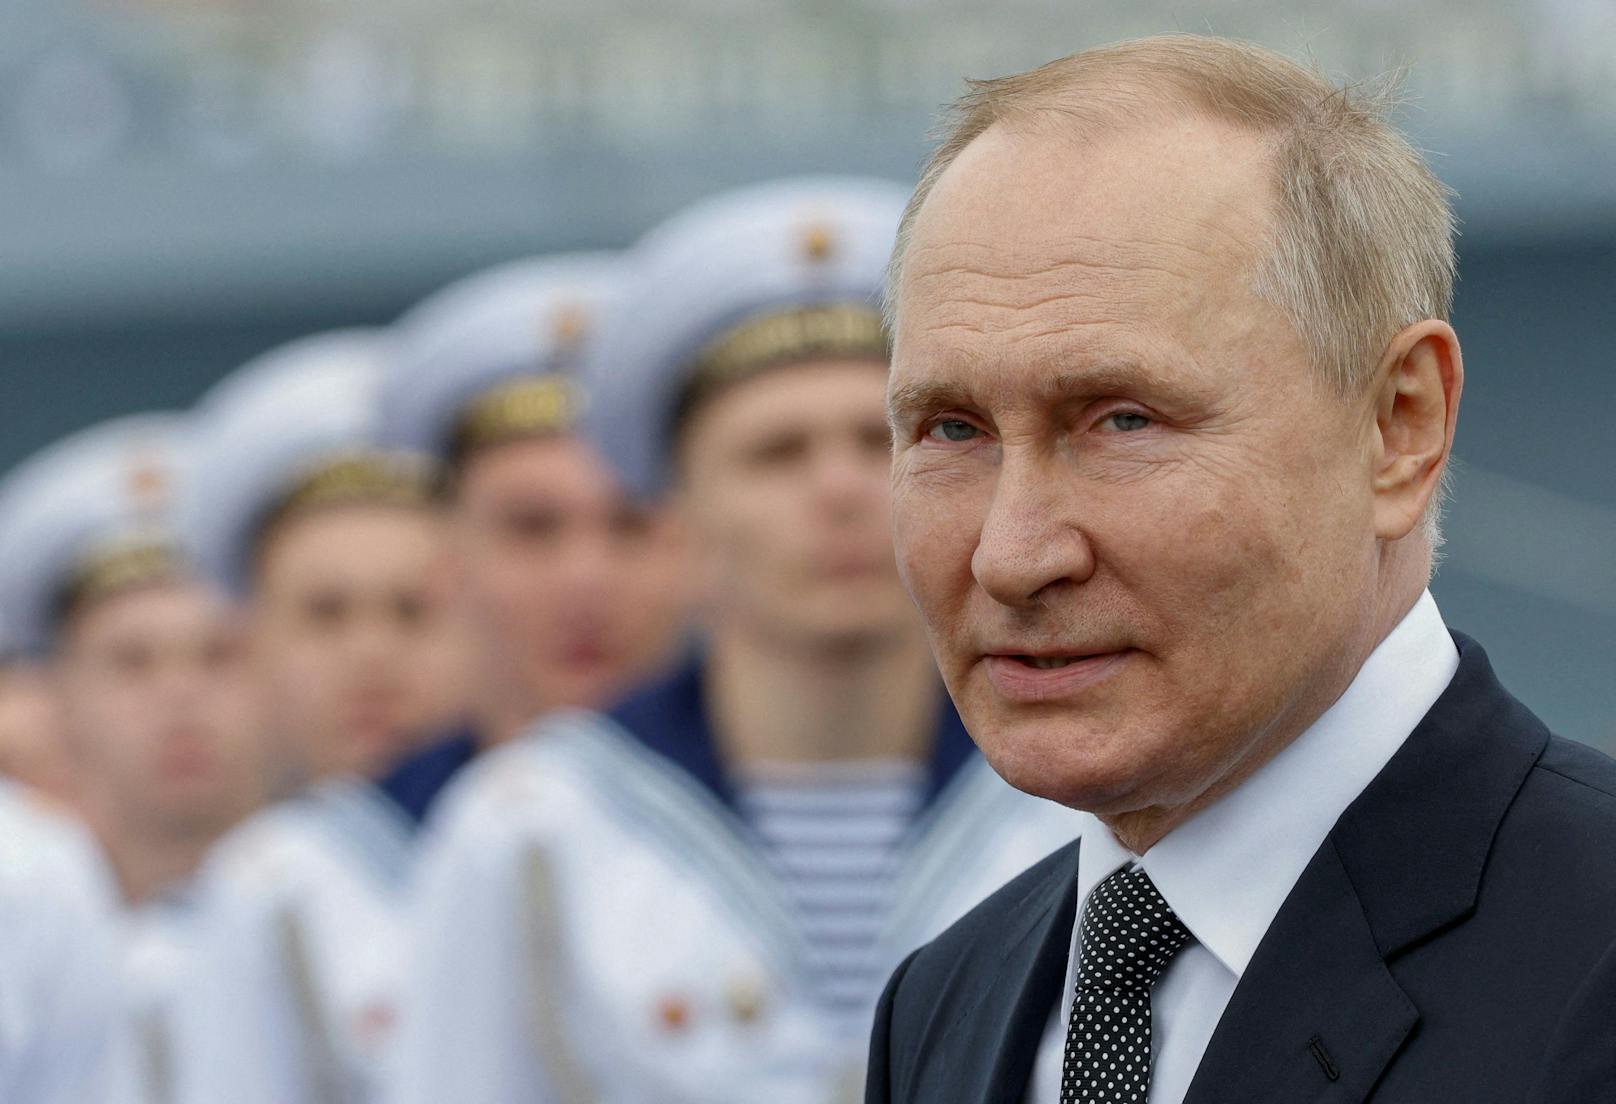 "Die gute Nachricht heißt: Der Kreml will eine Verhandlungslösung", sagte Schröder über Putin.